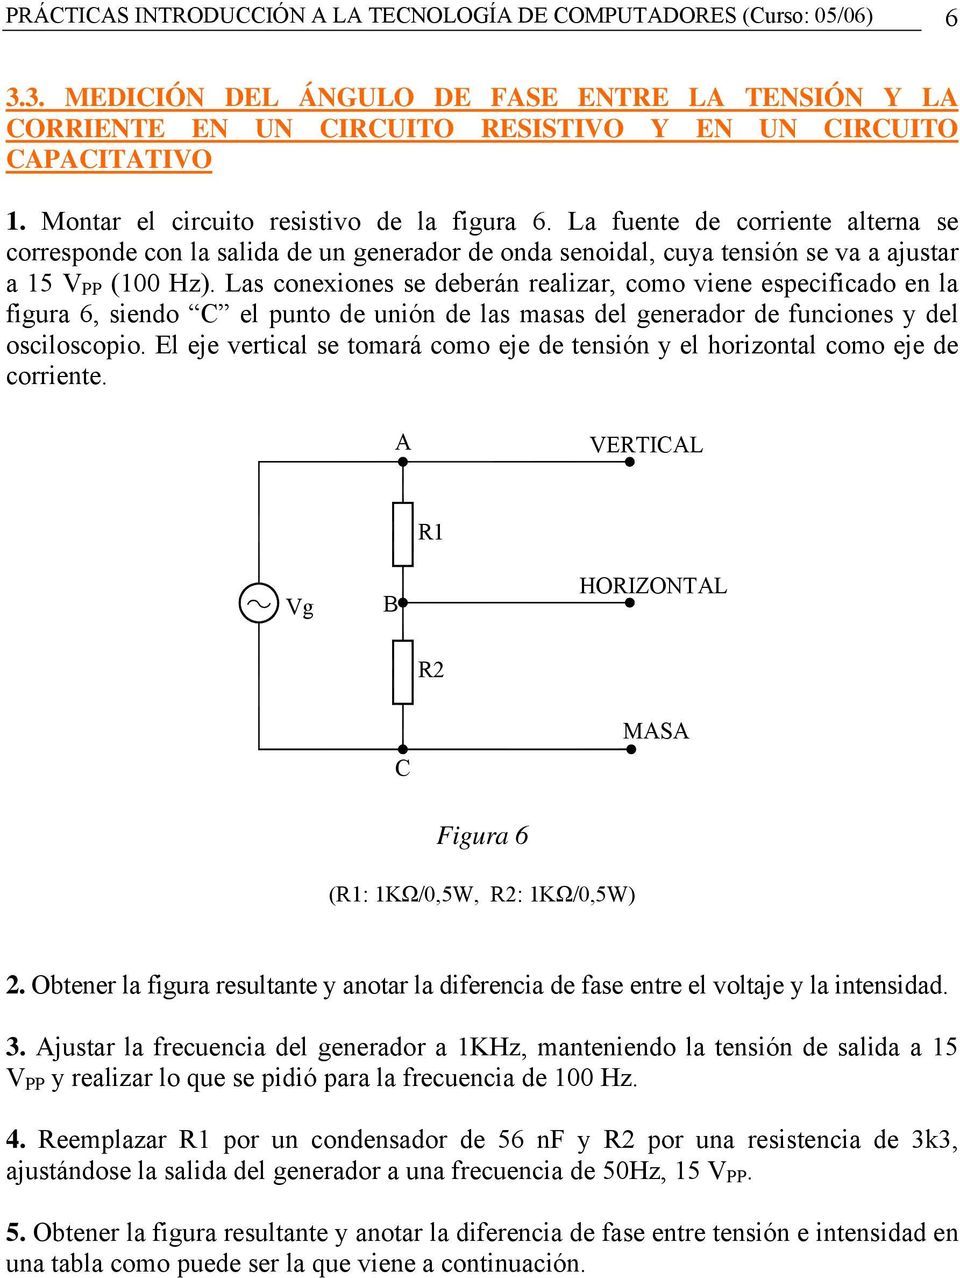 Las conexiones se deberán realizar, como viene especificado en la figura 6, siendo C el punto de unión de las masas del generador de funciones y del osciloscopio.